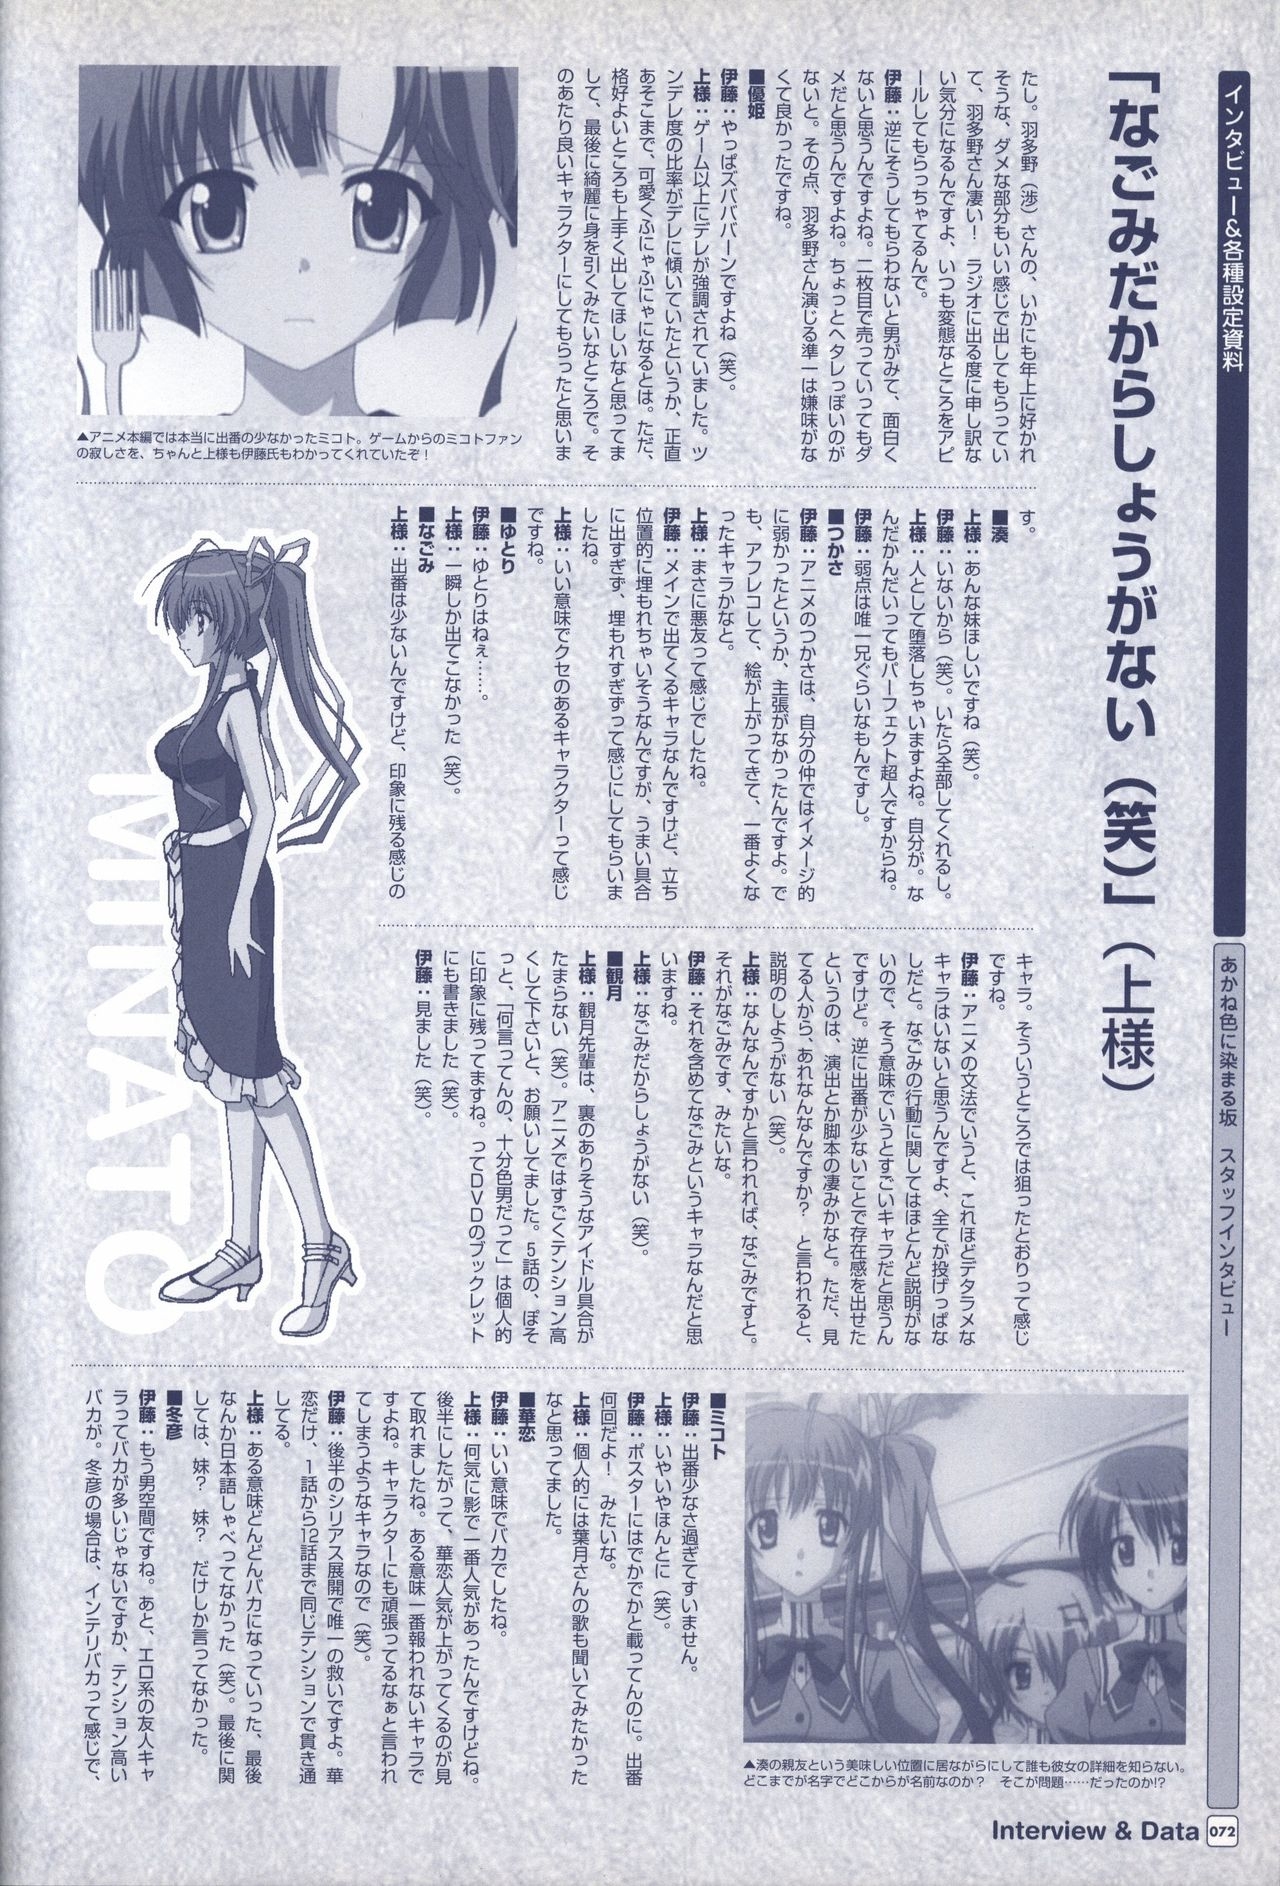 TV ANIME Akaneiro ni Somaru Saka Visual Guide Book 72